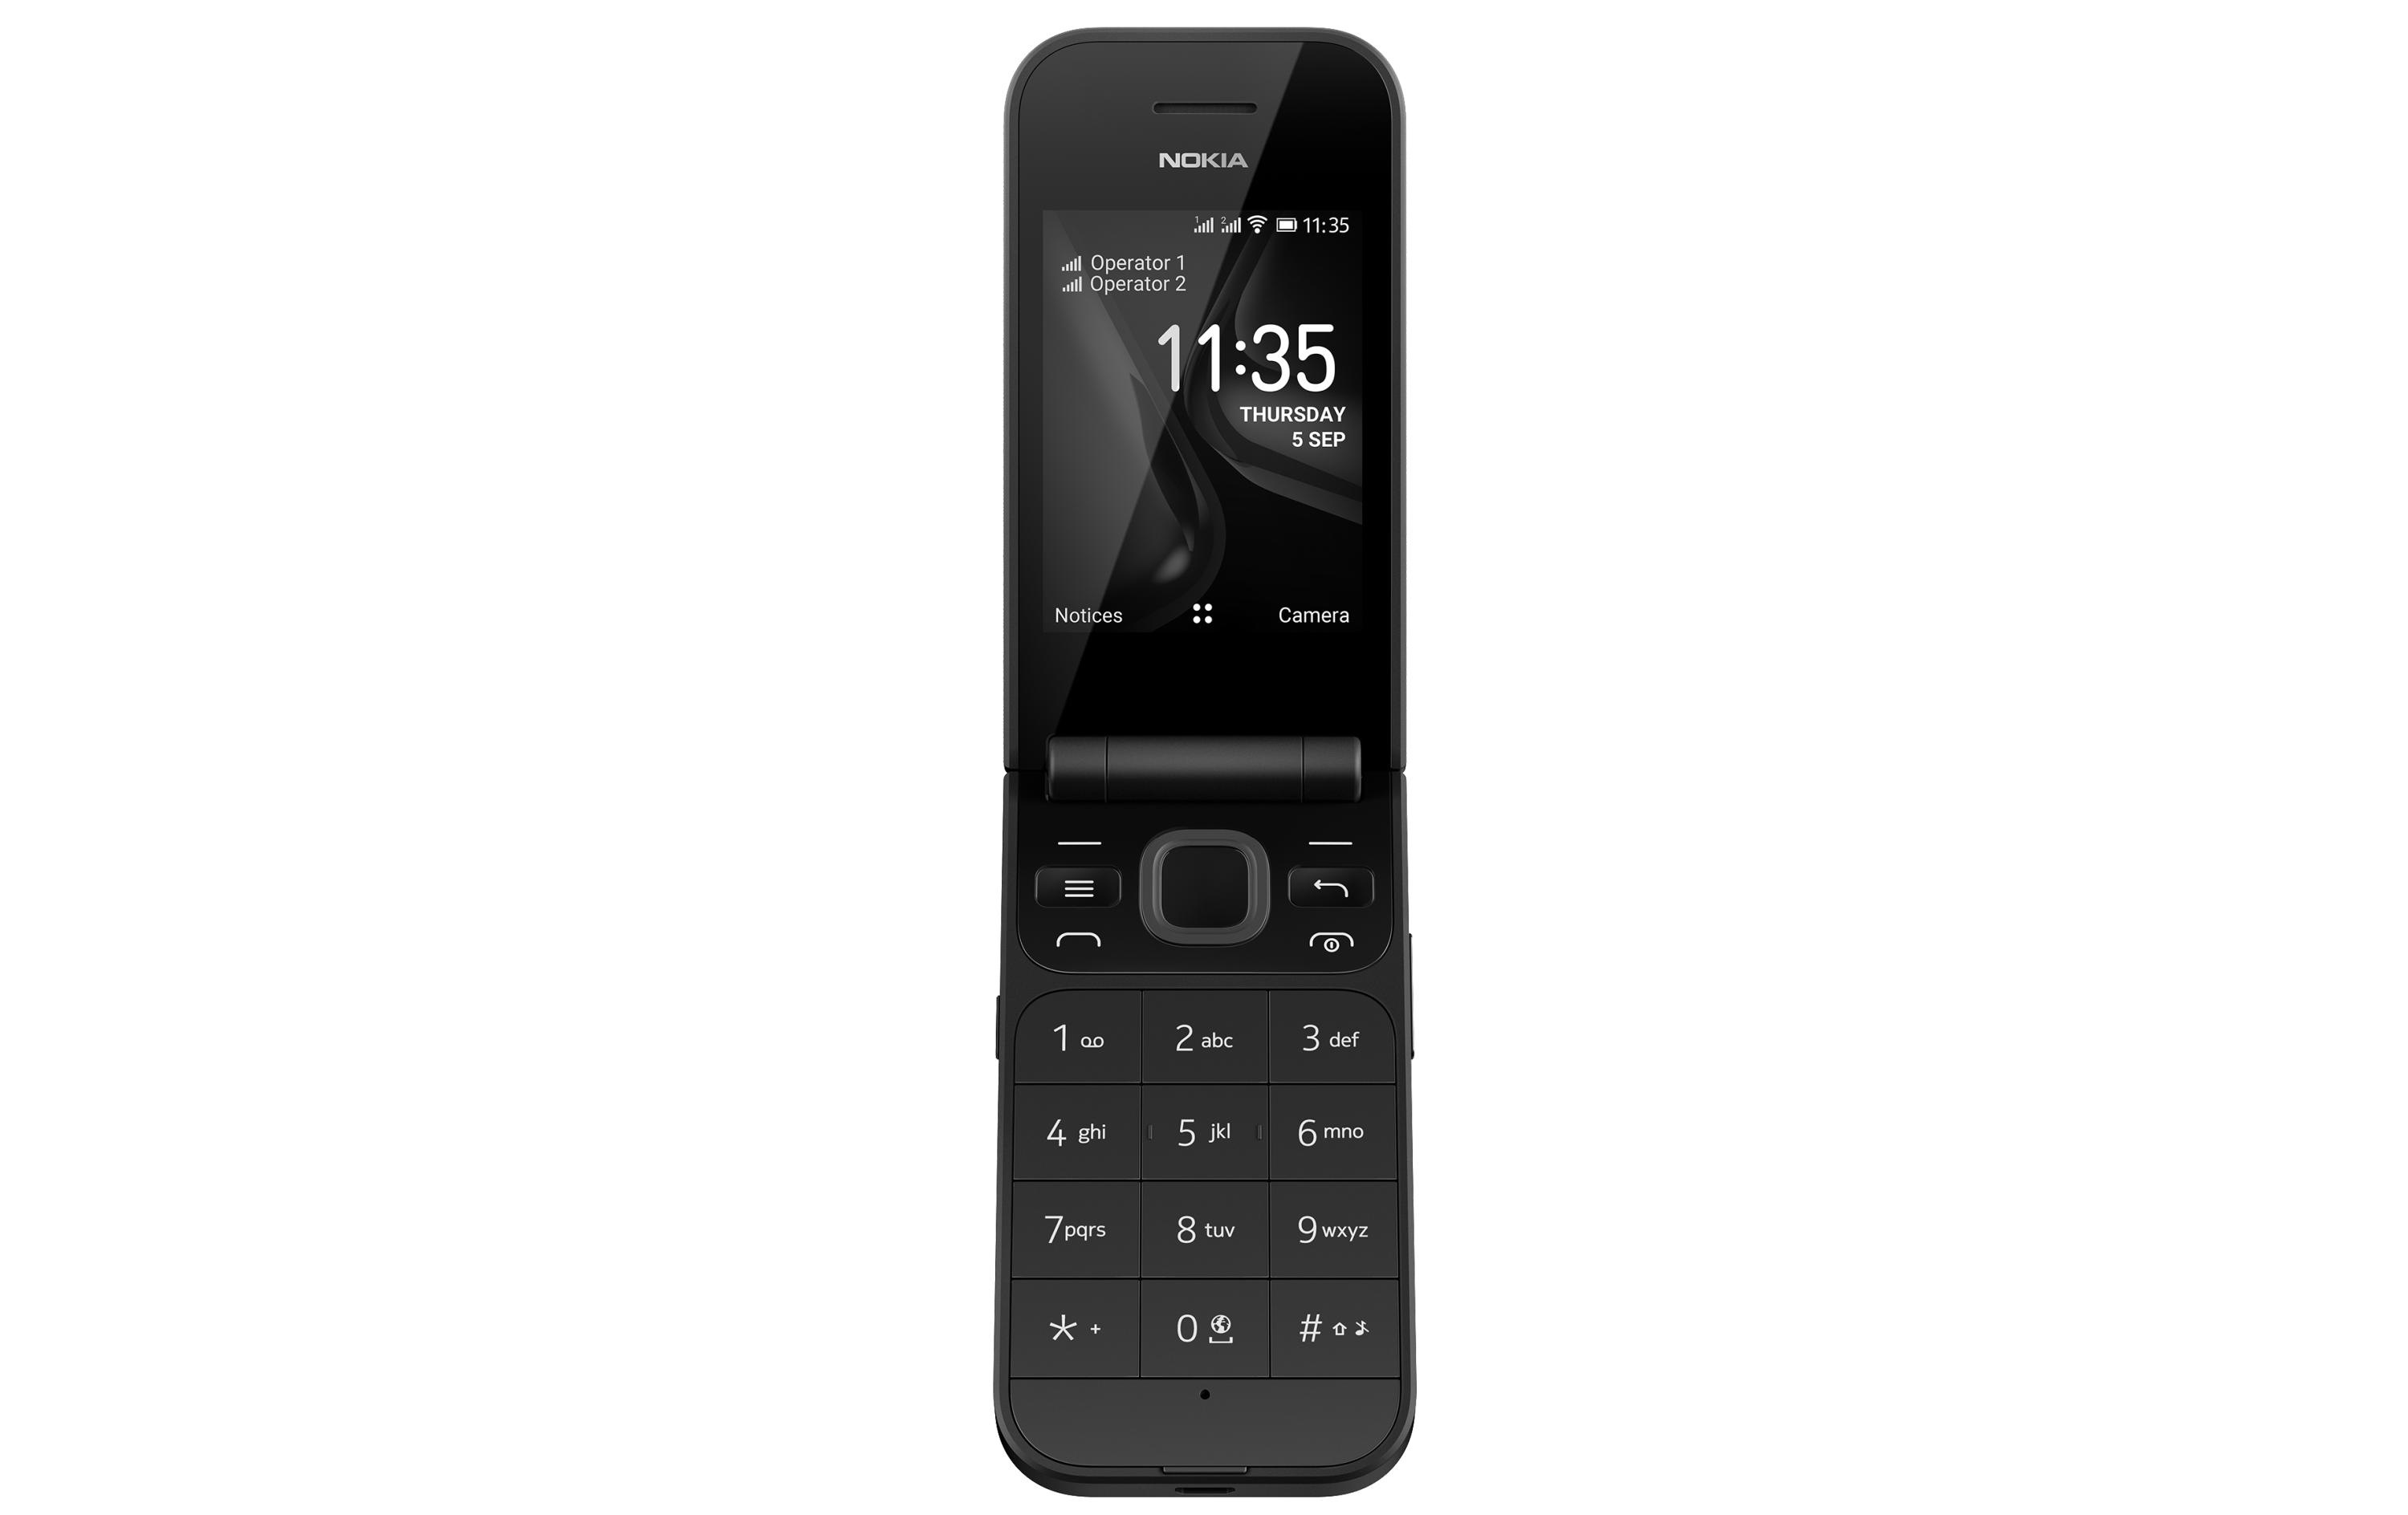 Nokia Smartphone »2720 Flip«, schwarz, 7,1 cm/2,8 Zoll, 4 GB Speicherplatz